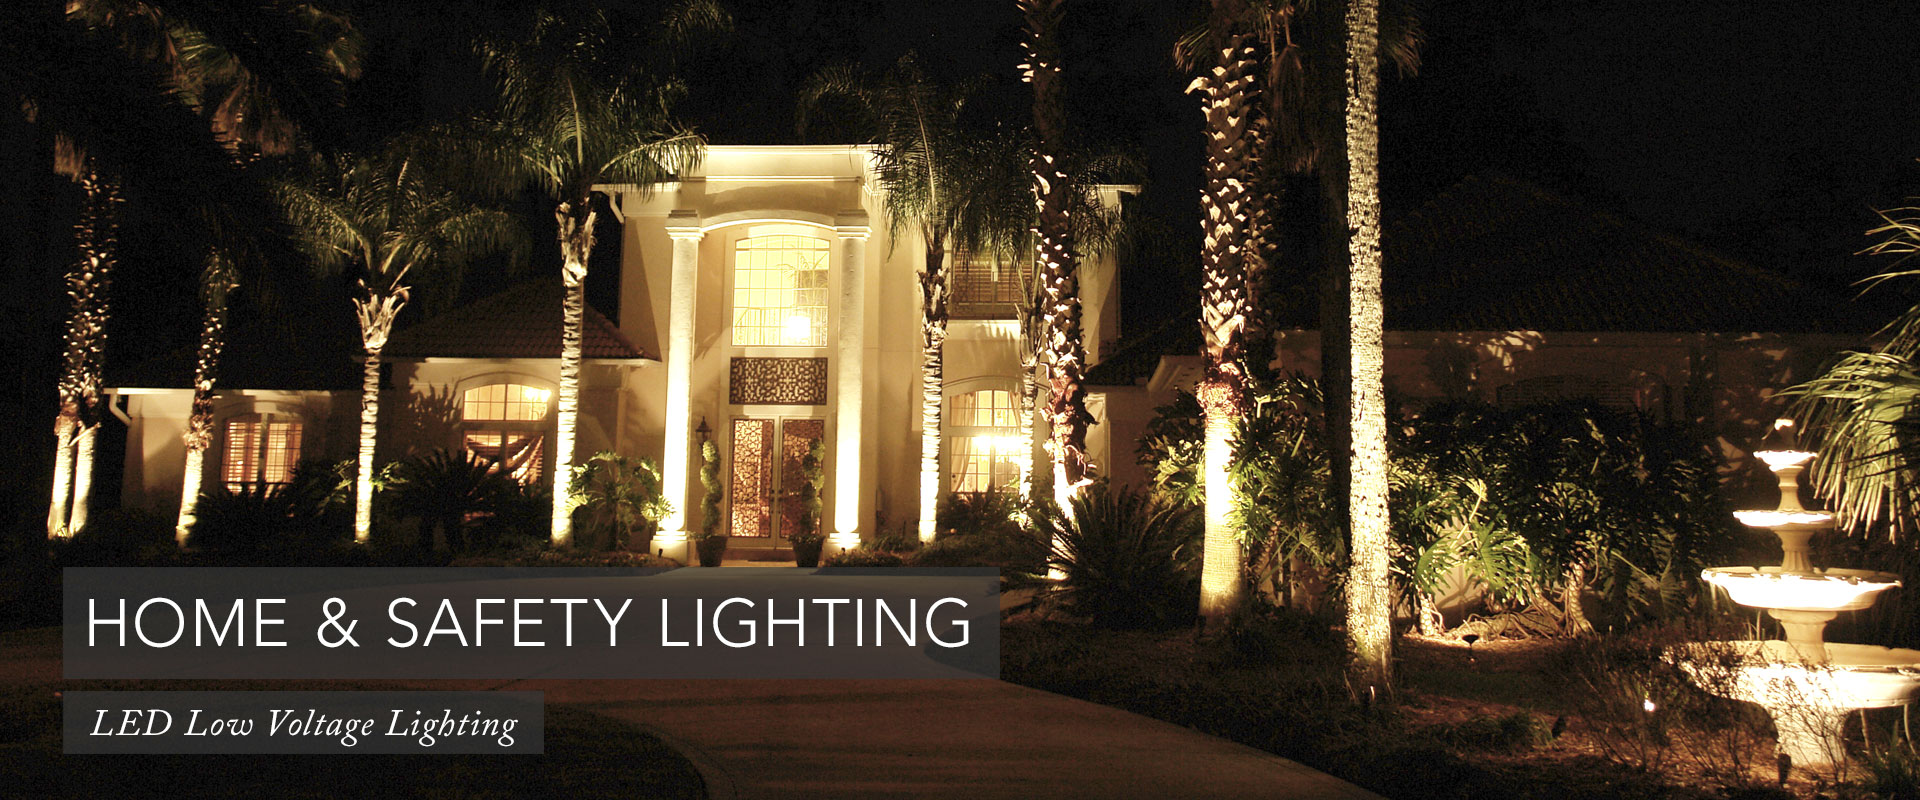 Home & Safety Landscape Lighting